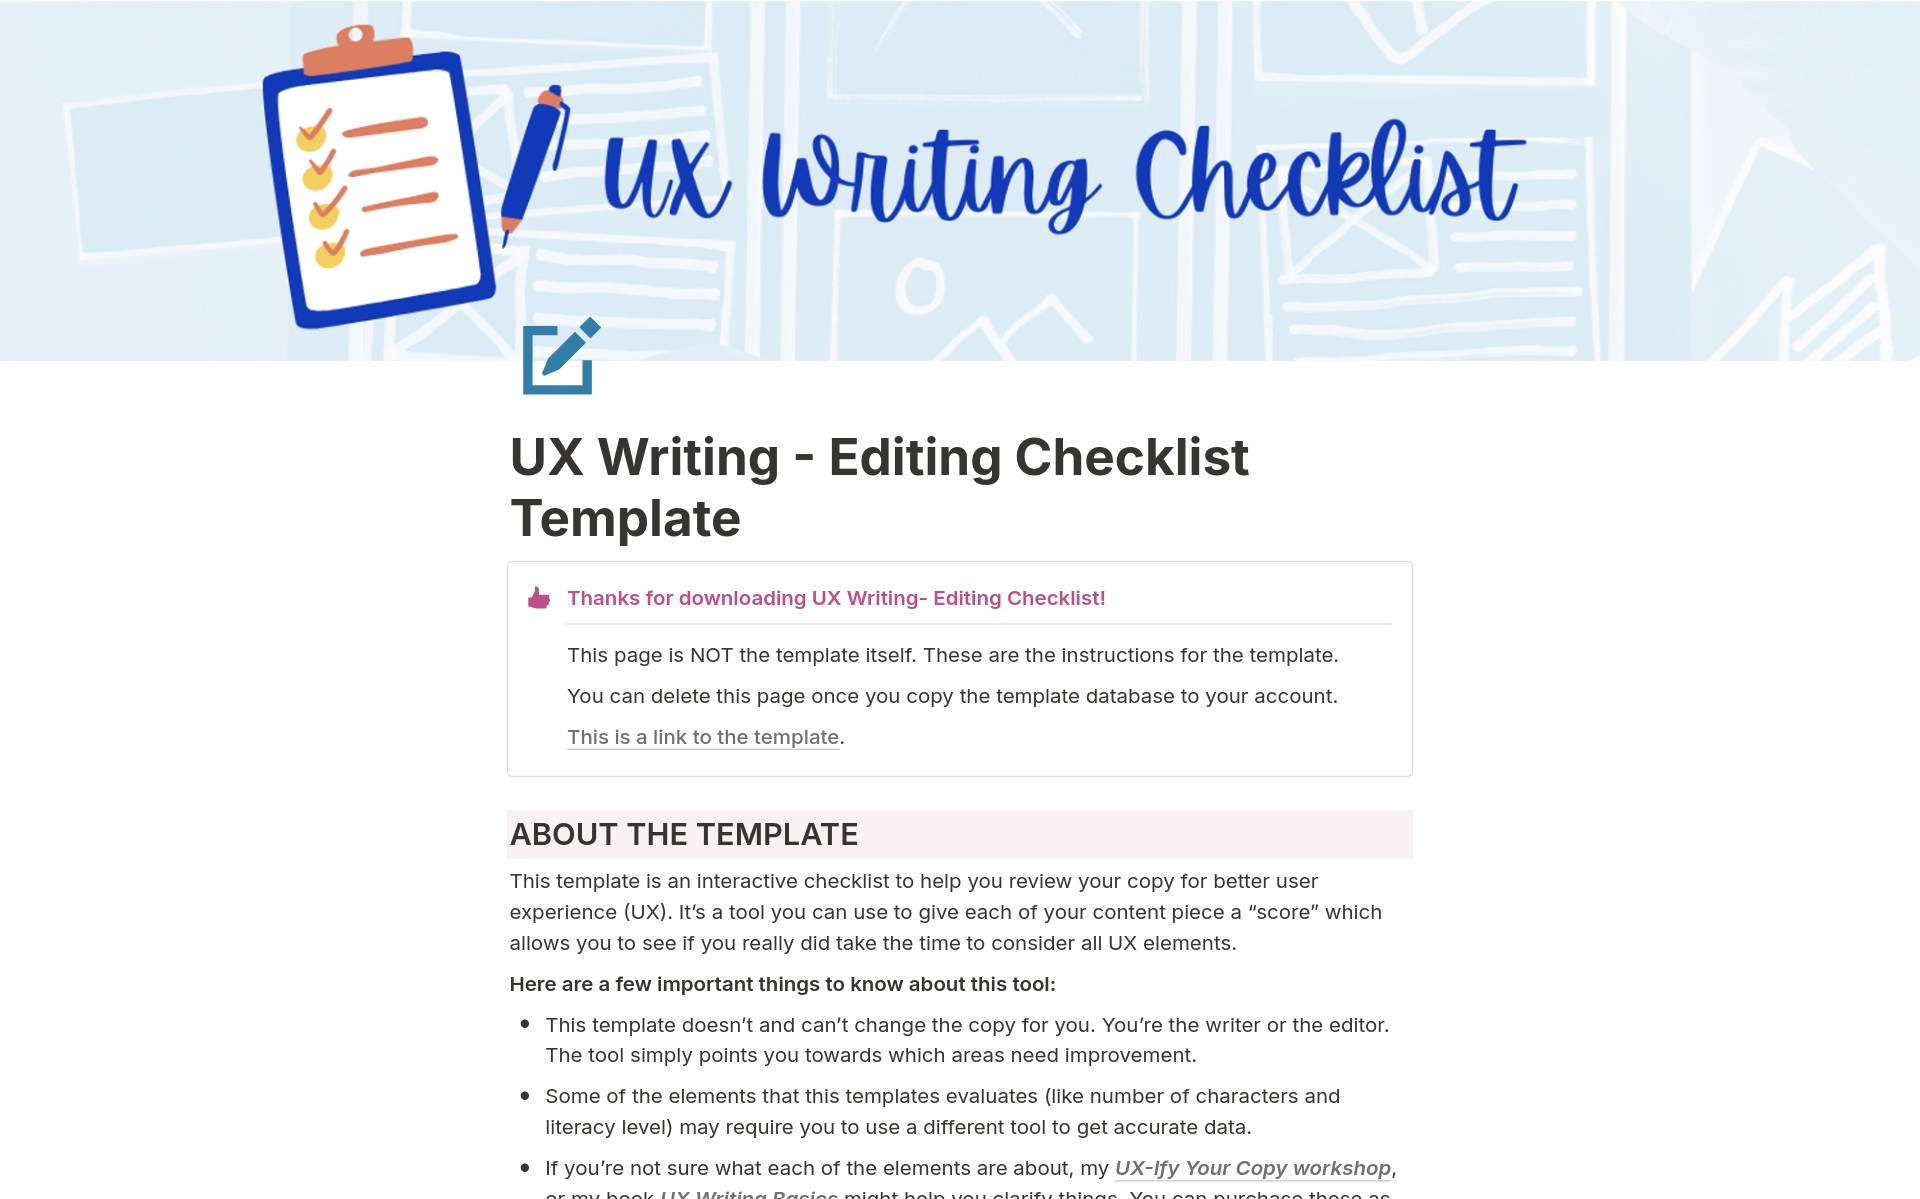 UX Writing - Editing Checklistのテンプレートのプレビュー